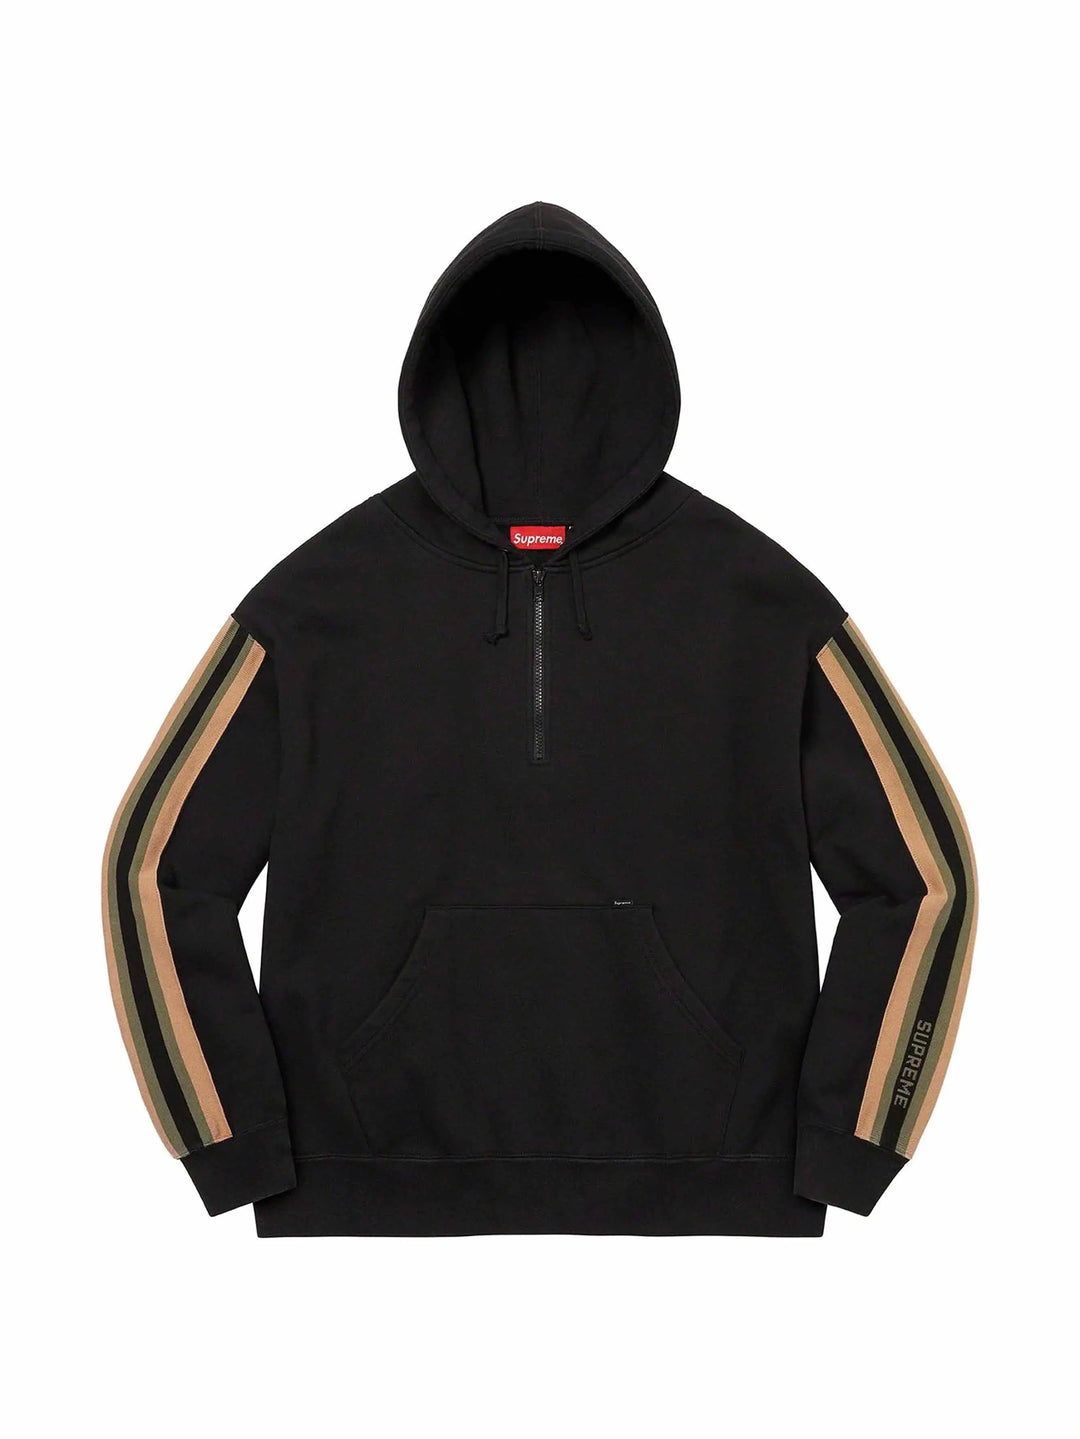 Supreme Half Zip Hooded Sweatshirt Black - Prior